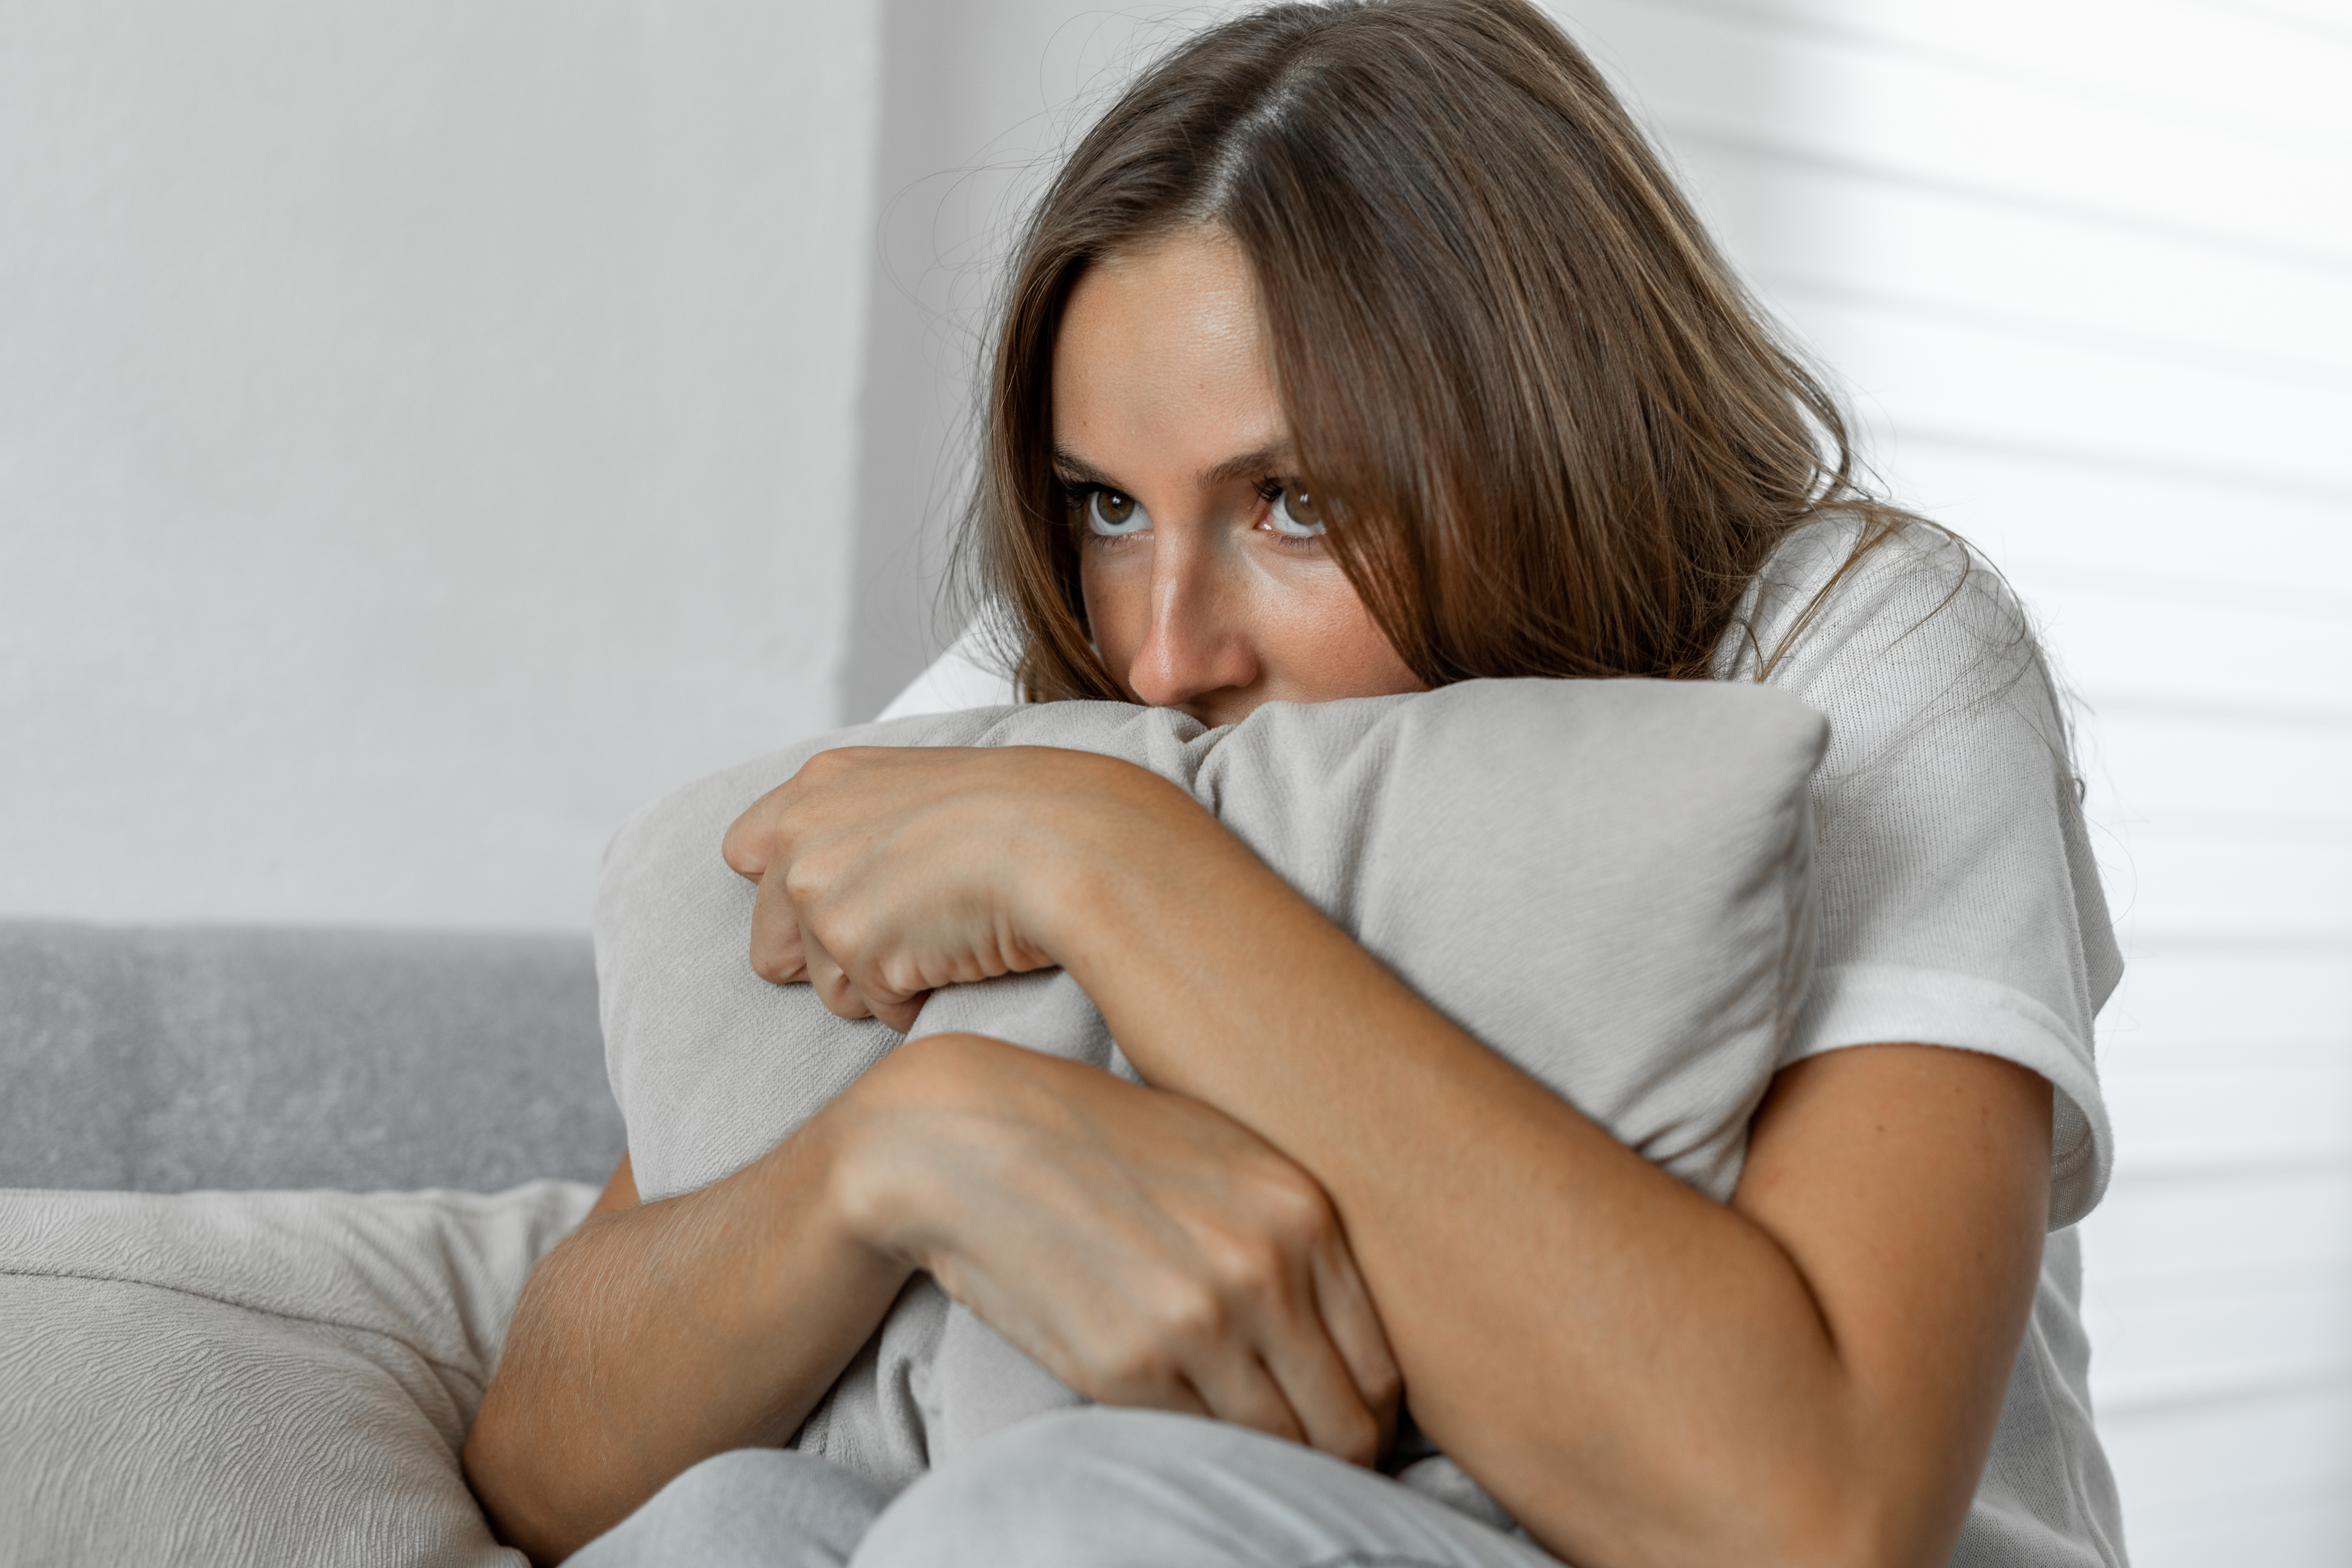 Verängstigte Frau zu Hause, die ein Kissen umarmt, das auf einem Sofa liegt | Quelle: Getty Images